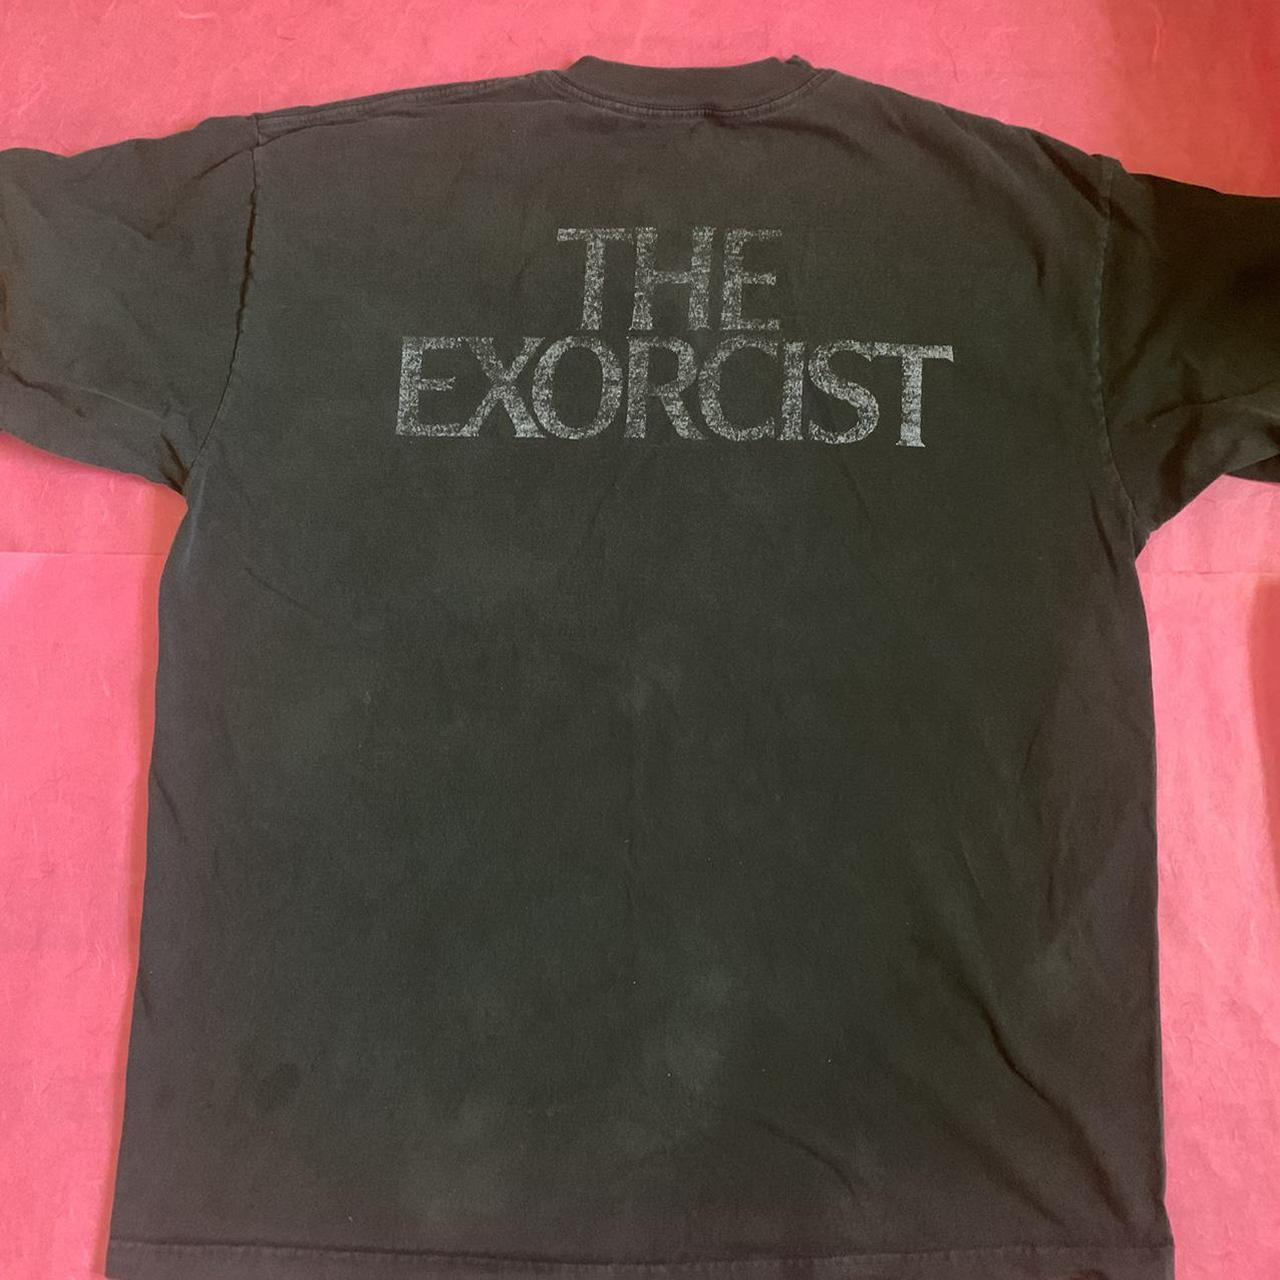 Product Image 2 - The Exorcist Shirt by Dumbgood.